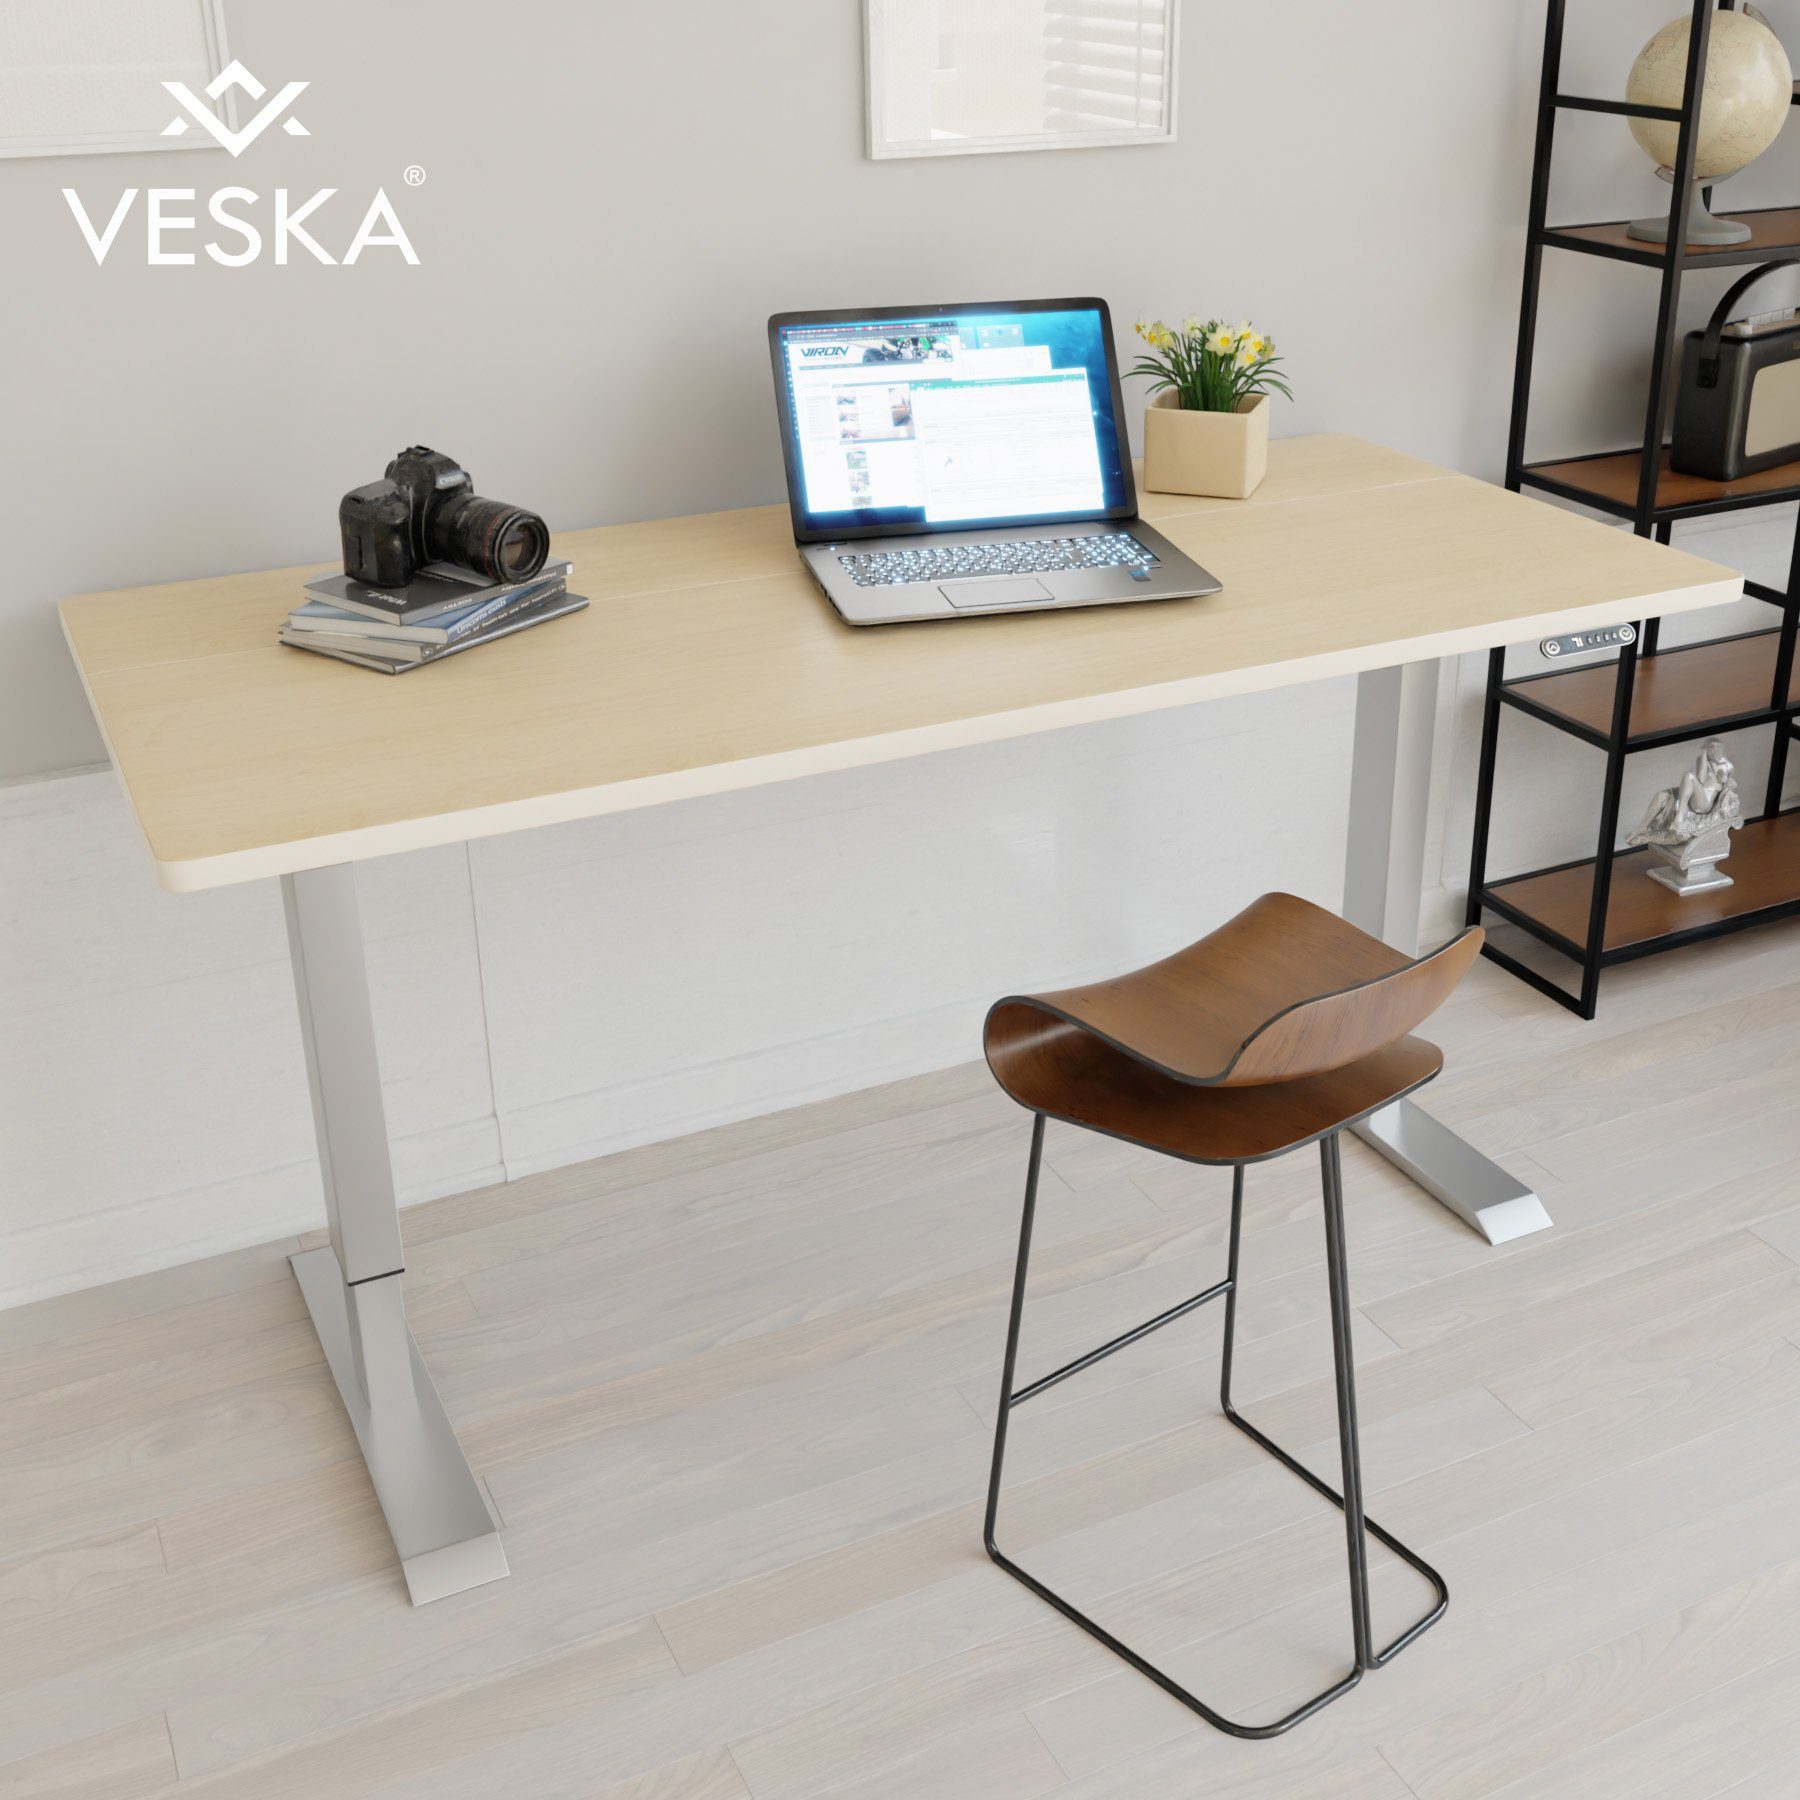 VESKA Schreibtisch Höhenverstellbar 140 x 70 cm - Bürotisch Elektrisch mit Touchscreen - Sitz- & Stehpult Home Office Silber | Bambus